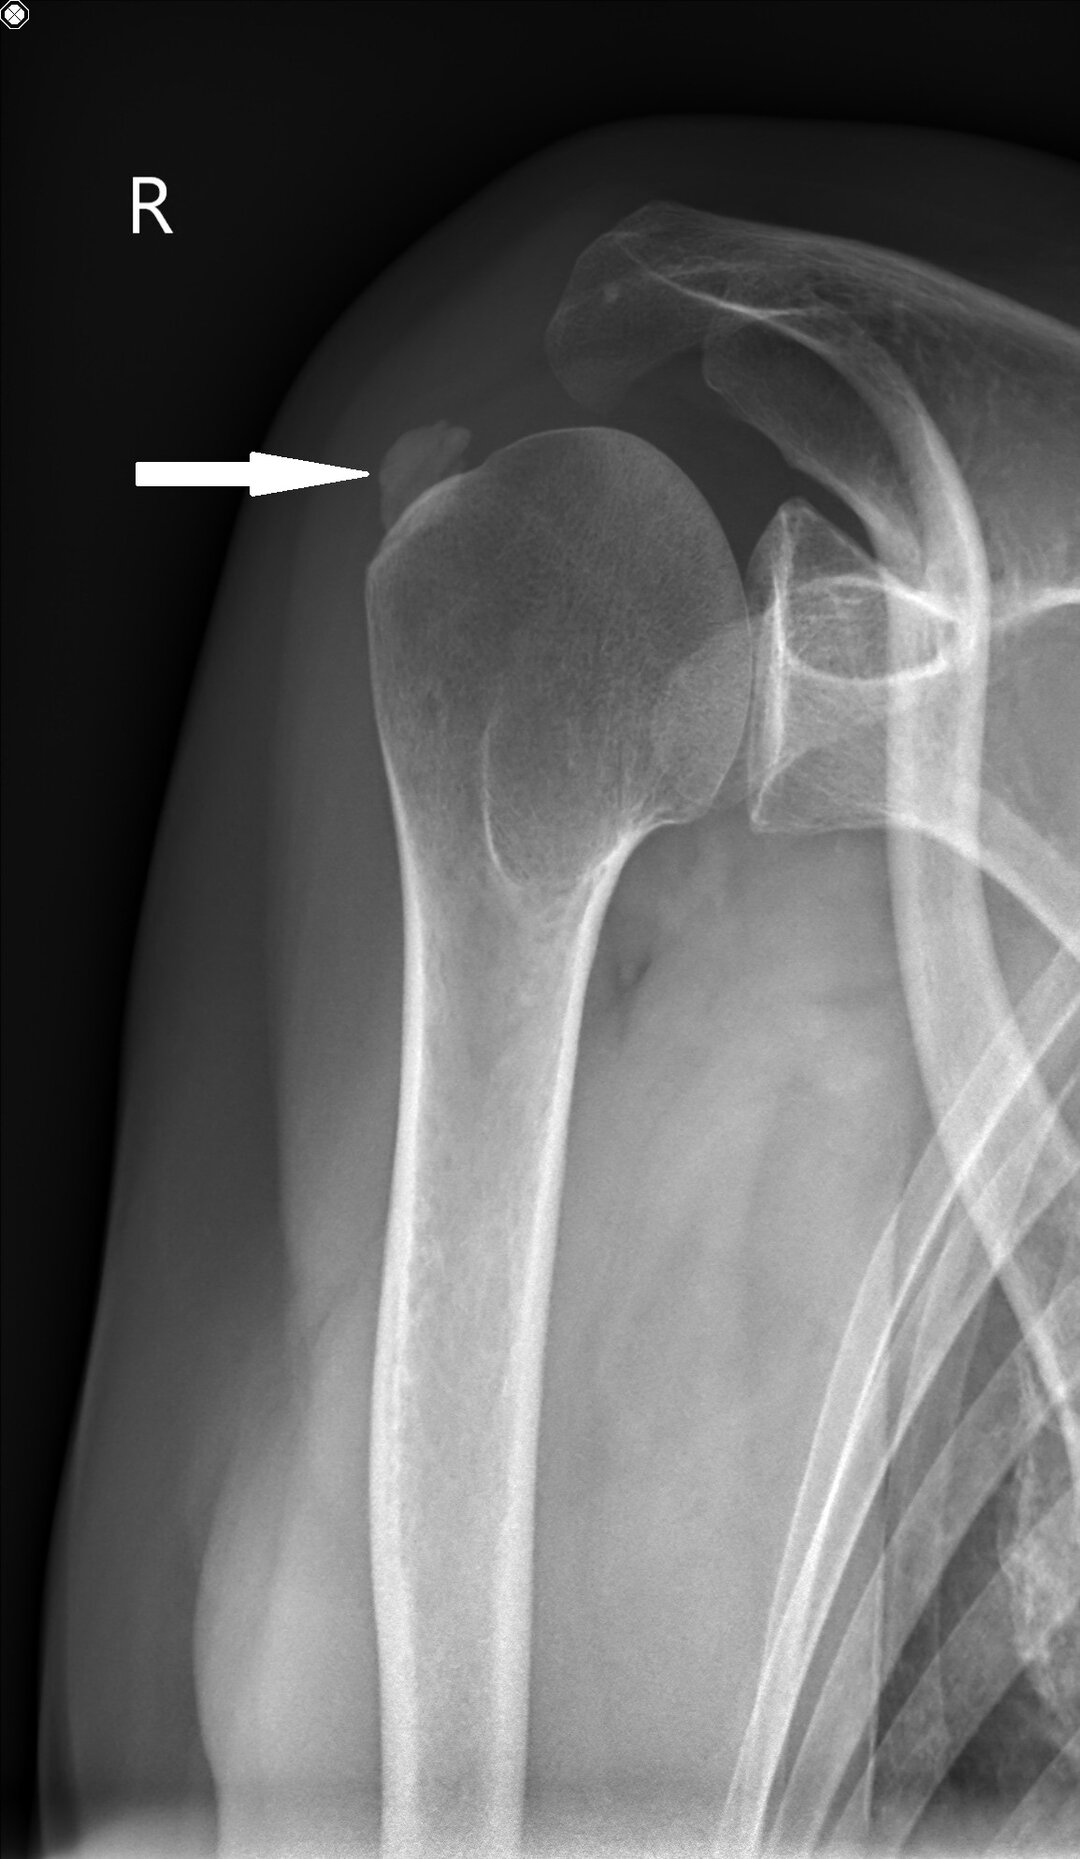 Røntgenbillede af højre skulder